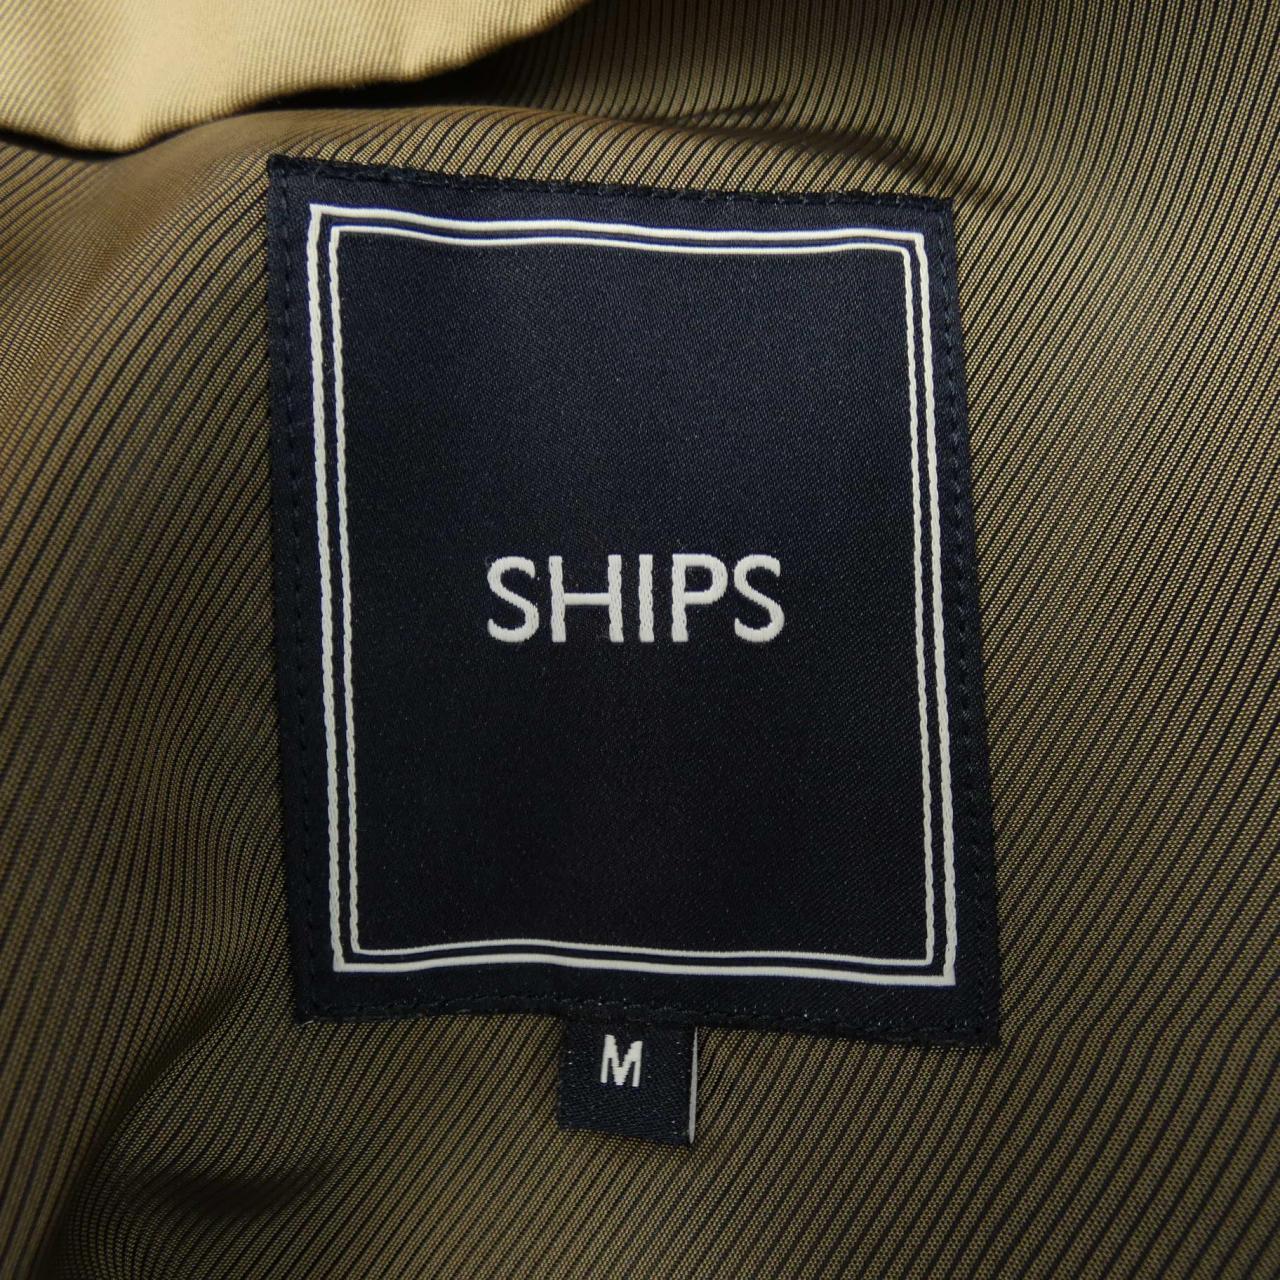 Ships SHIPS coat